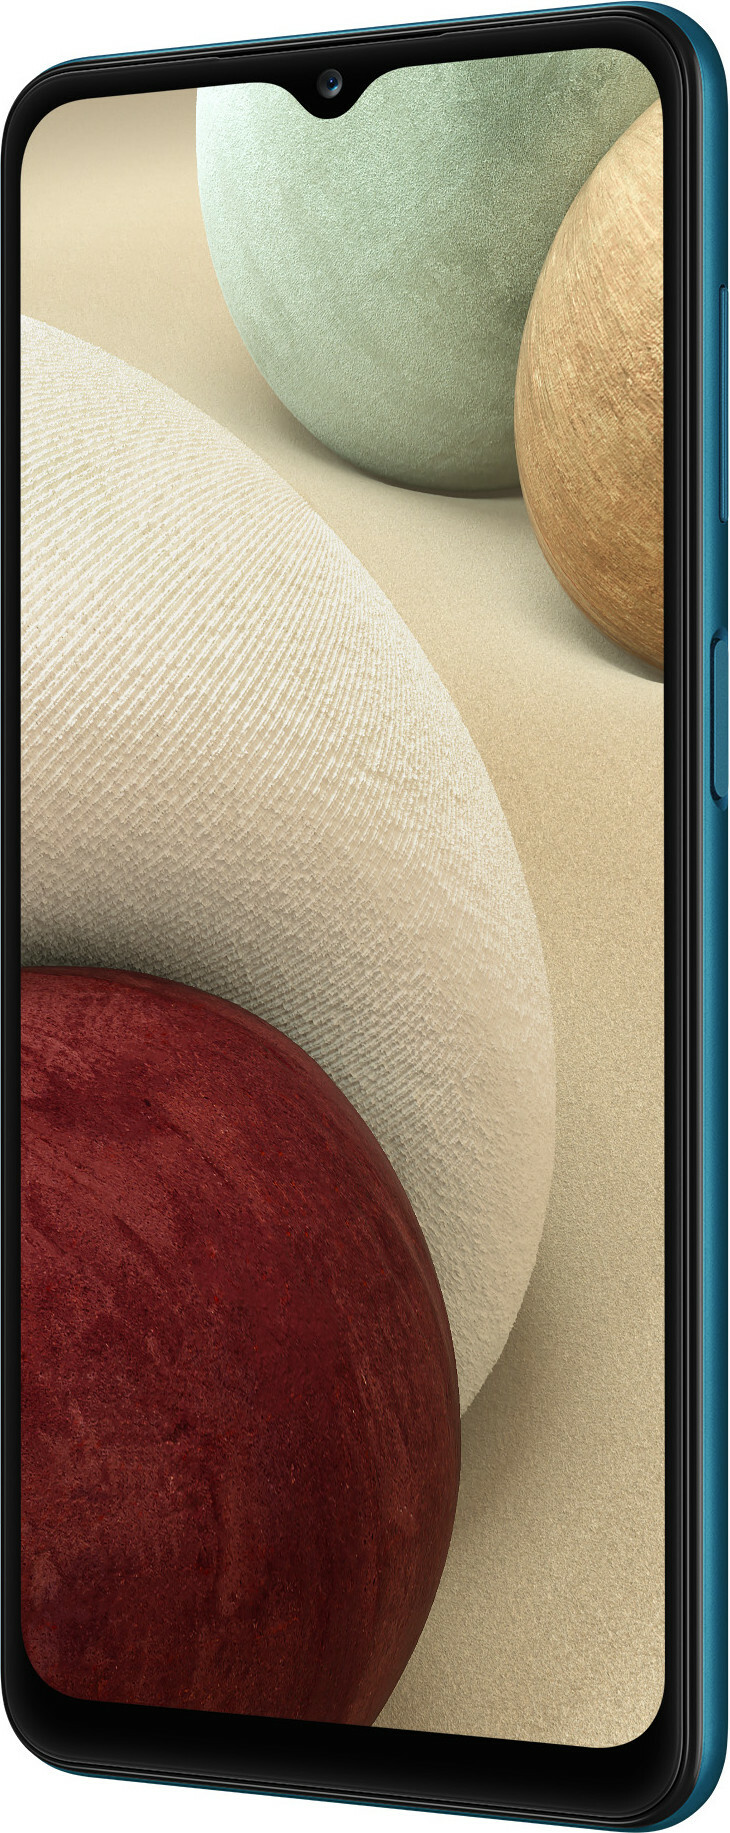 Samsung Galaxy A12s (Nacho) 32GB